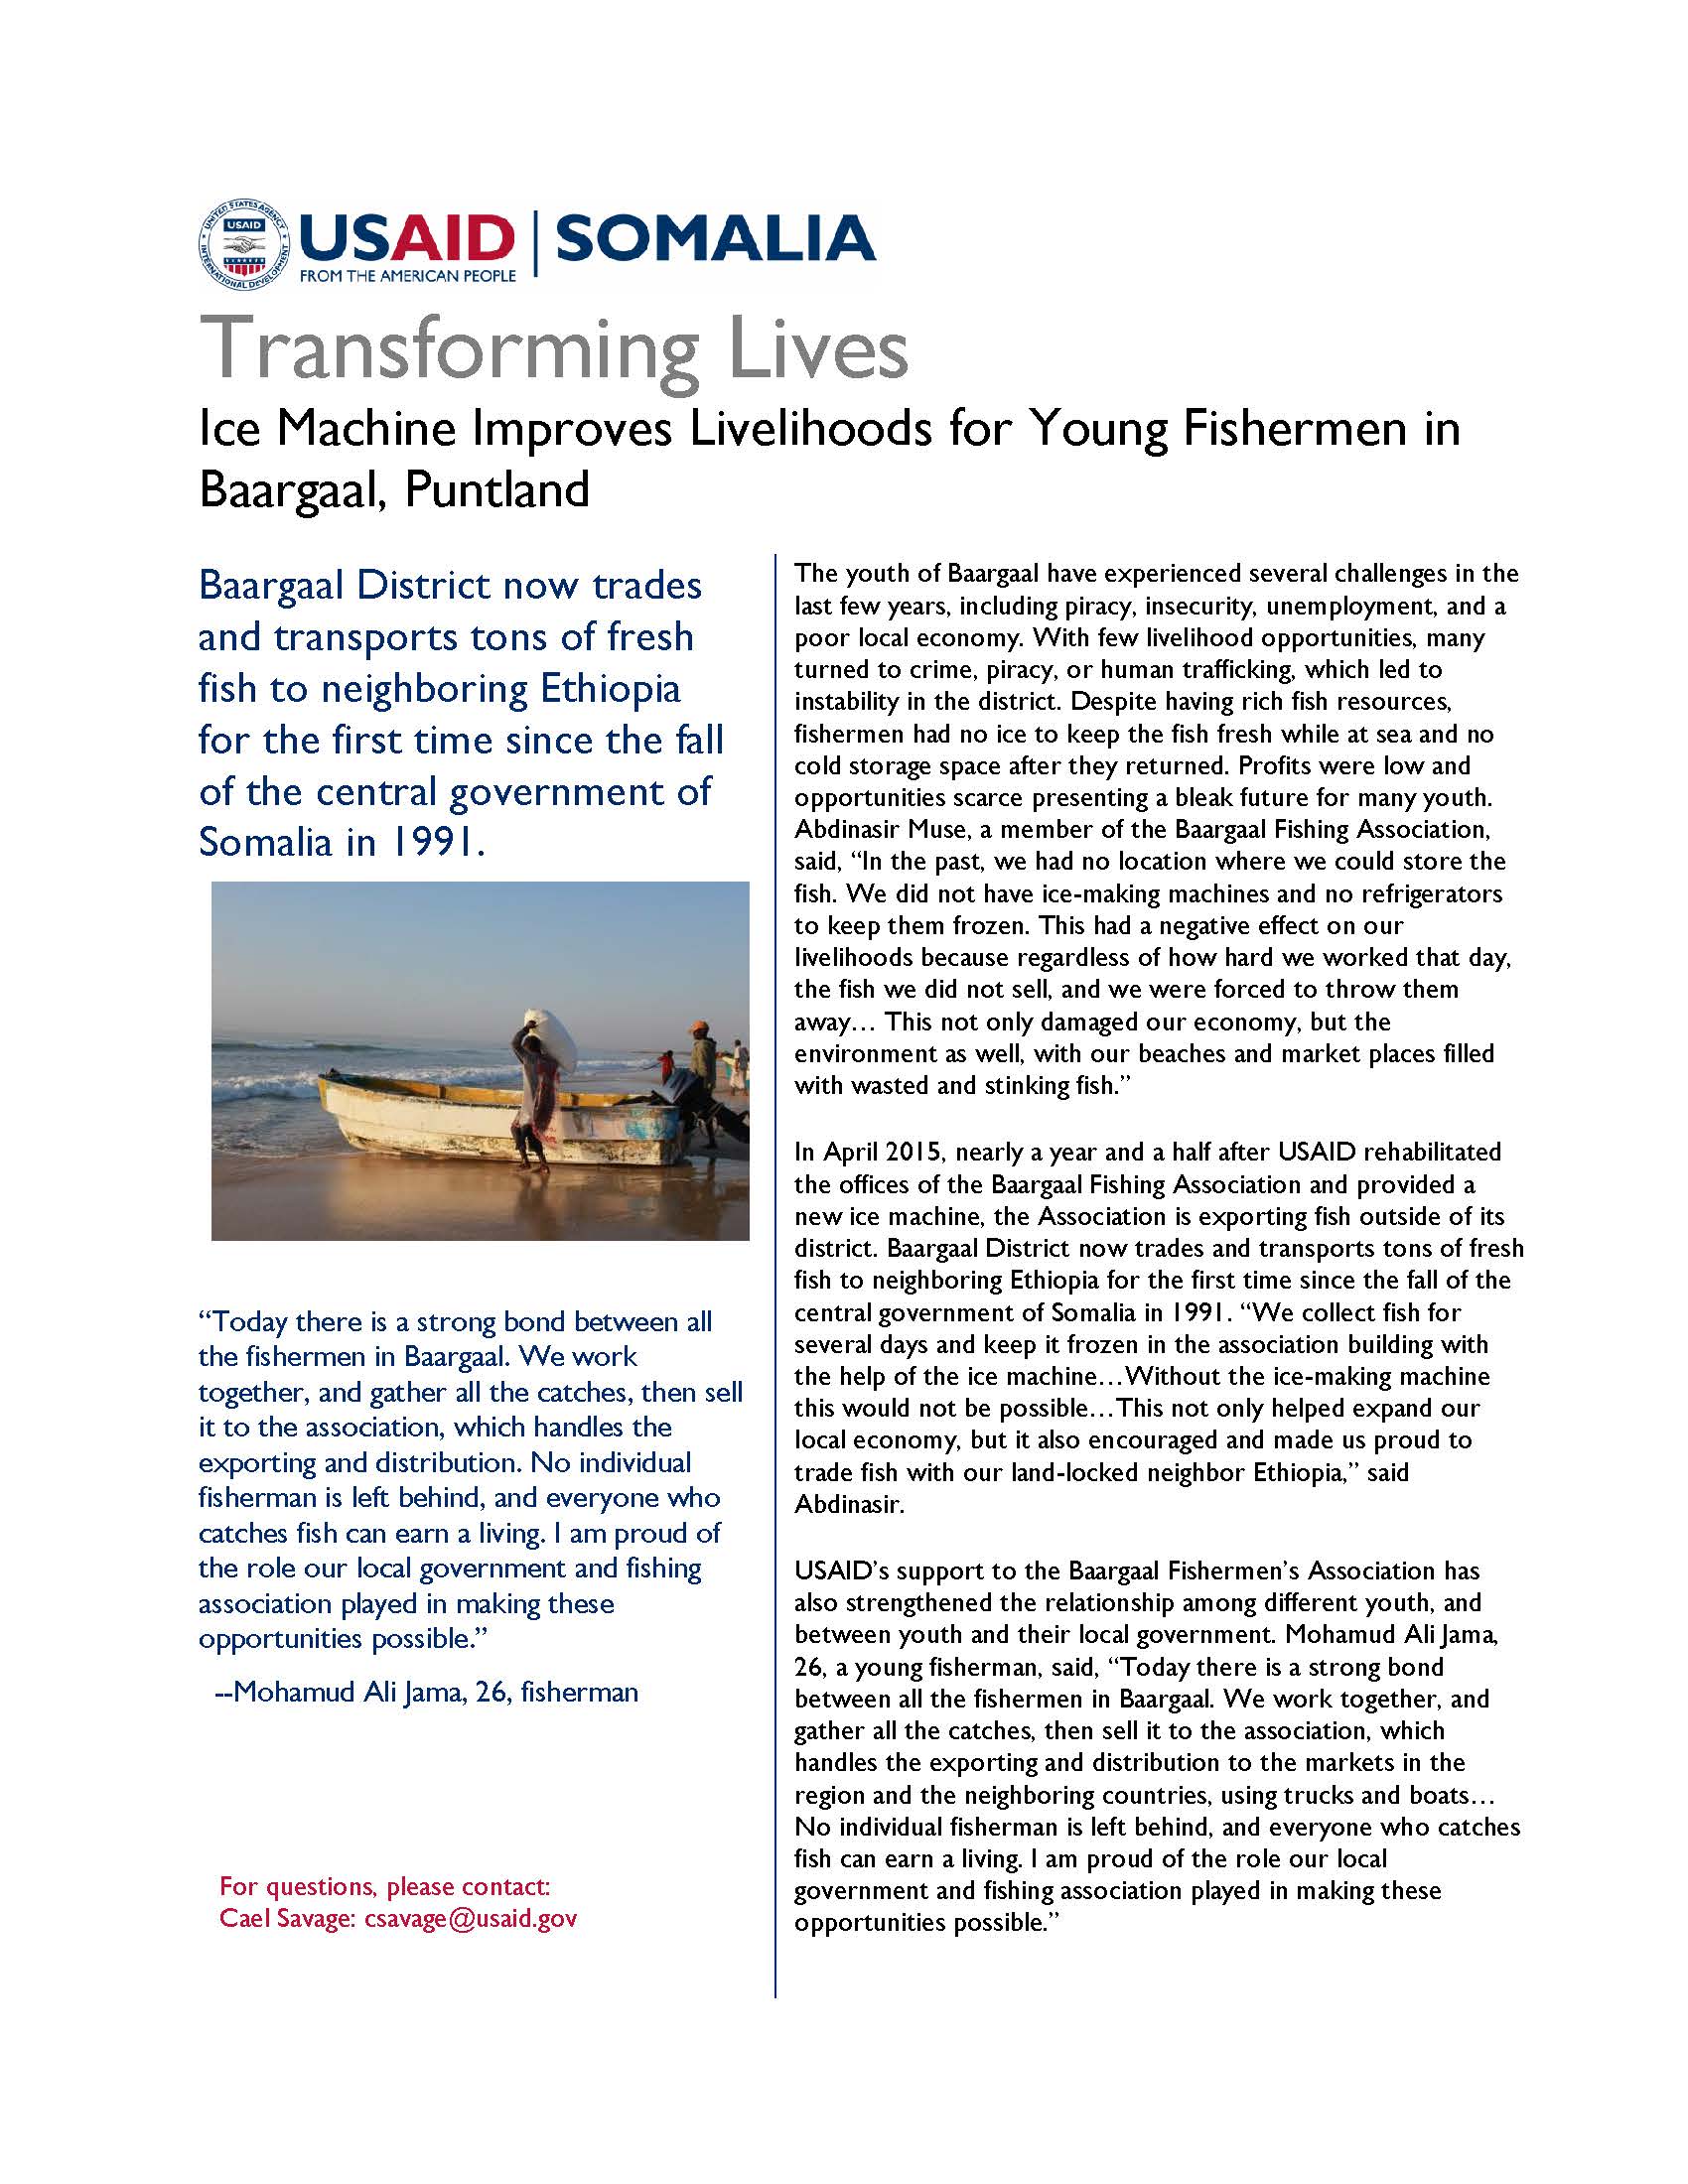 Ice Machine Improves Livelihoods for Young Fishermen in Baargaal, Puntland